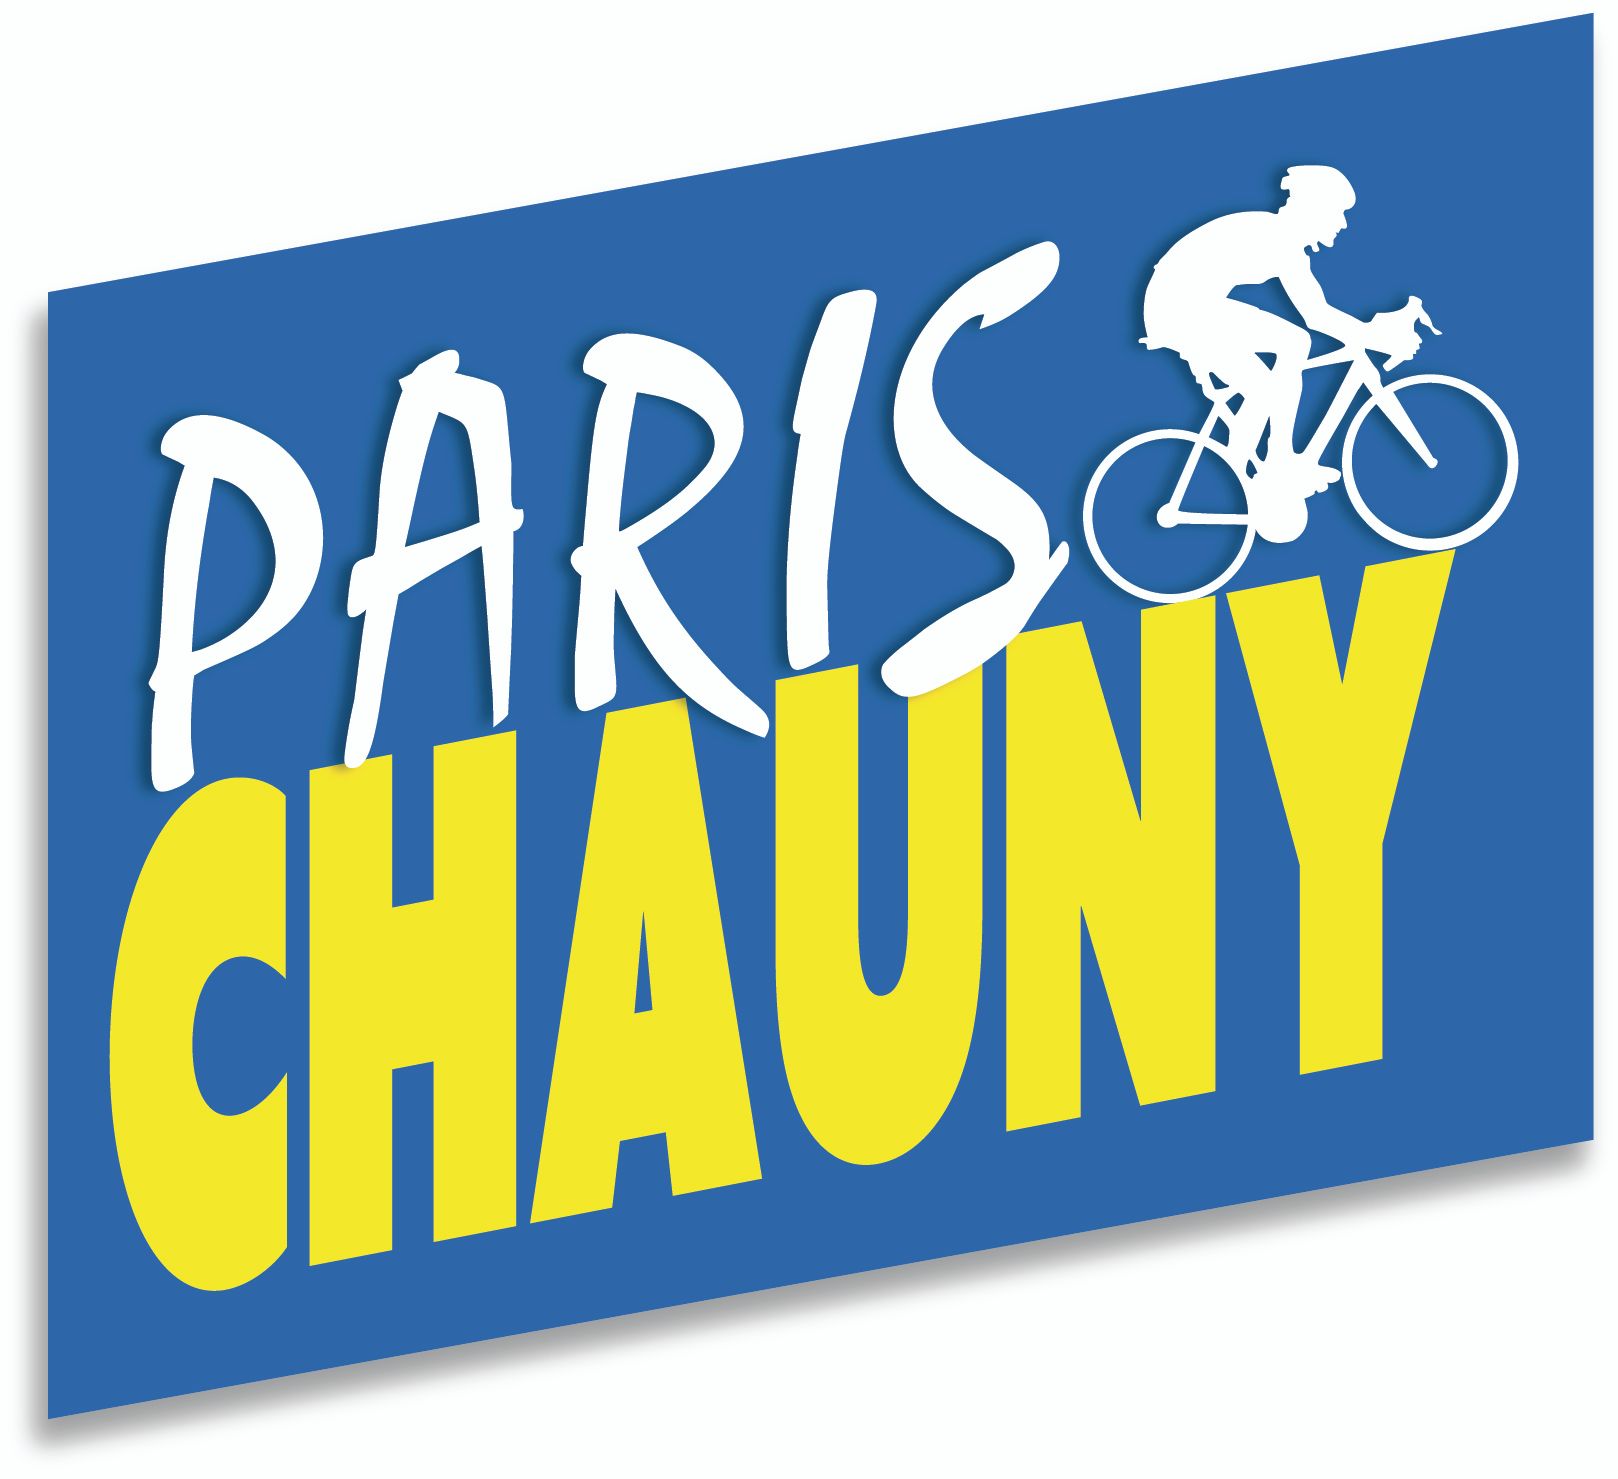 image de présentation : Paris-Chauny